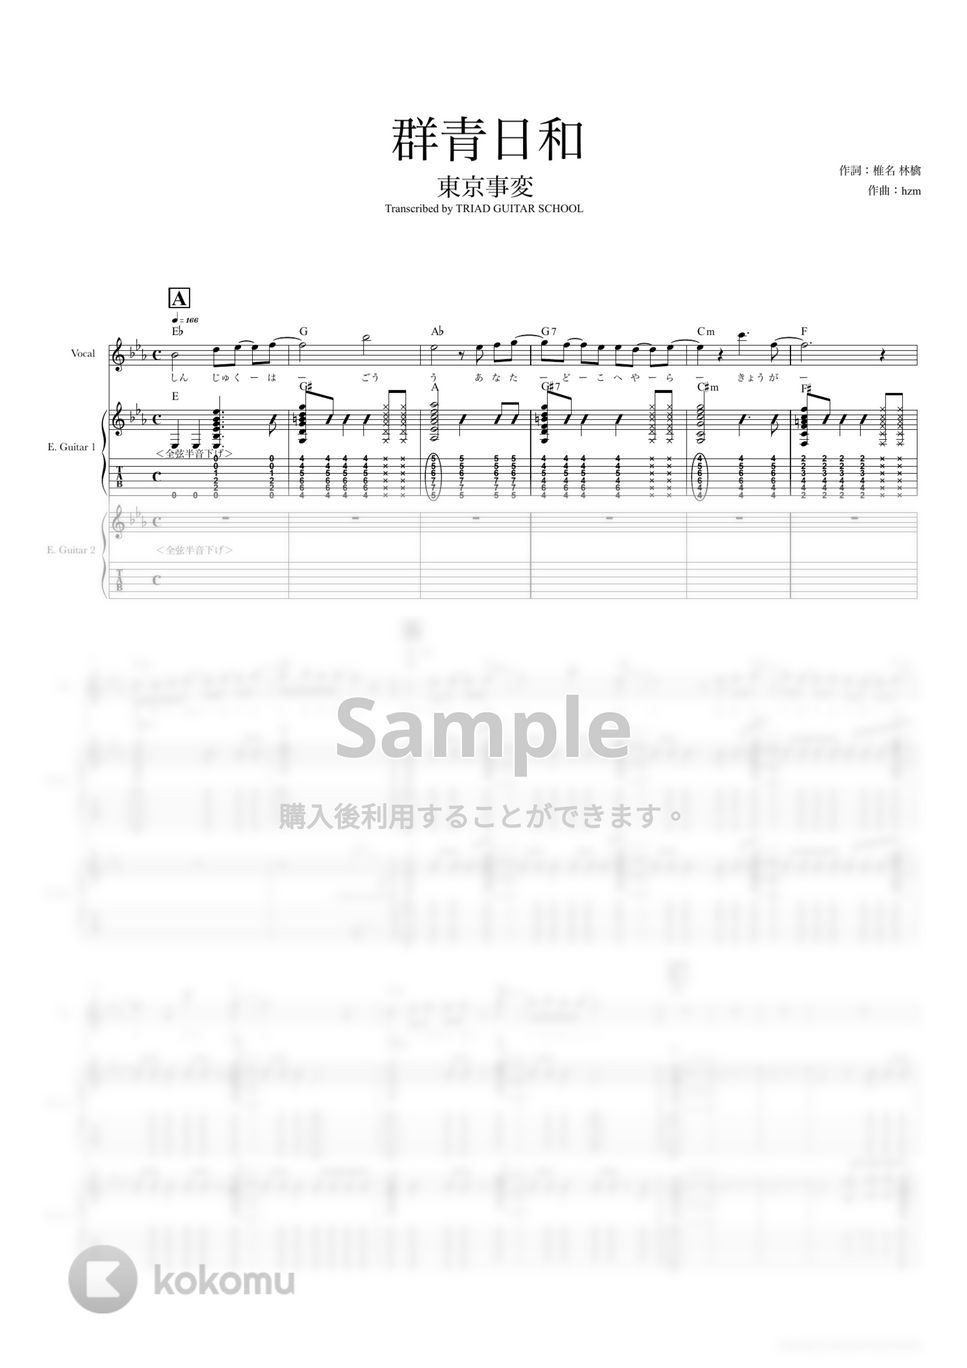 東京事変 - 群青日和 (ギタースコア・歌詞・コード付き) by TRIAD GUITAR SCHOOL